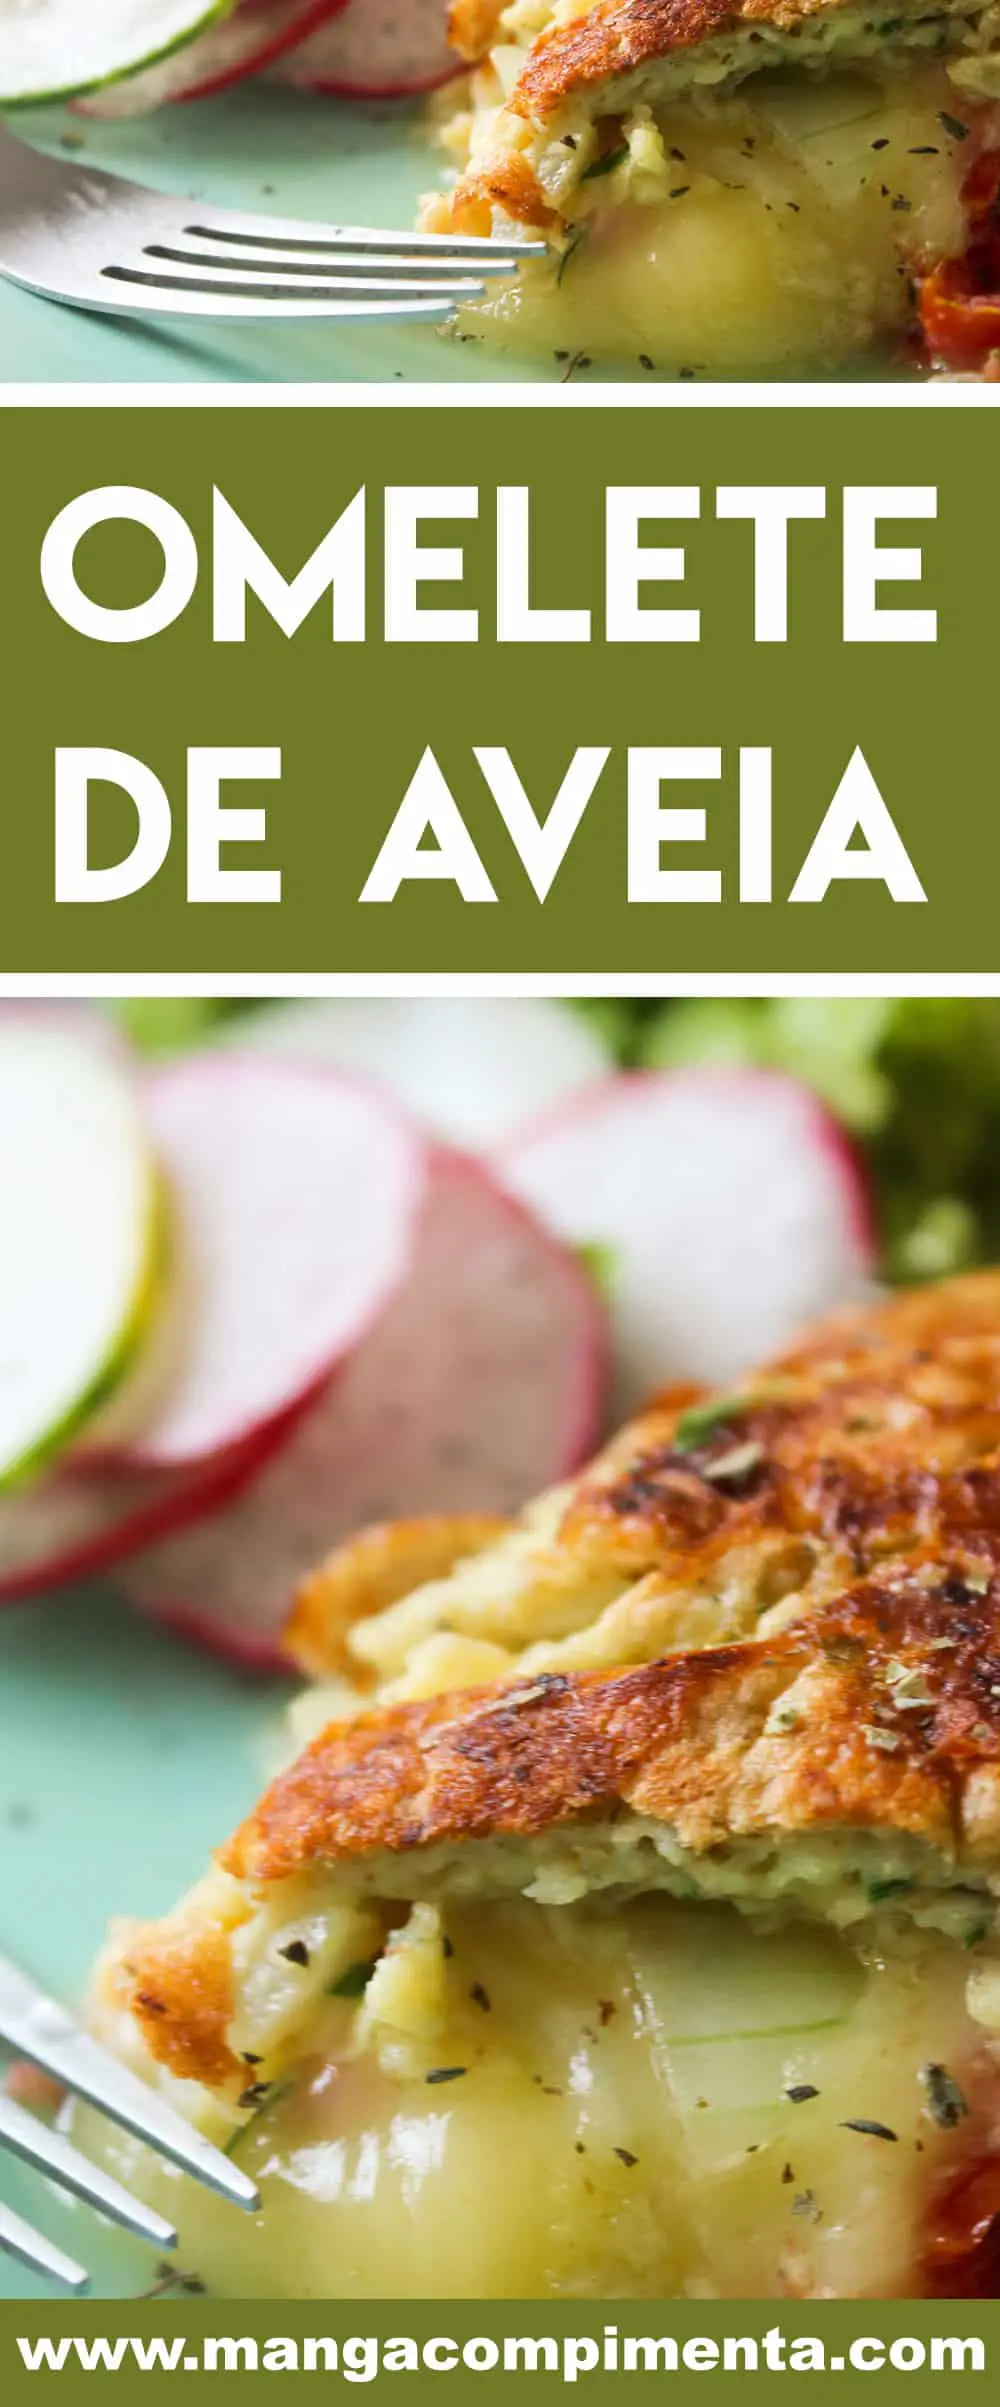 Receita de Omelete de Aveia com Queijo e Tomate - um prato nutritivo para os dias corridos da semana!